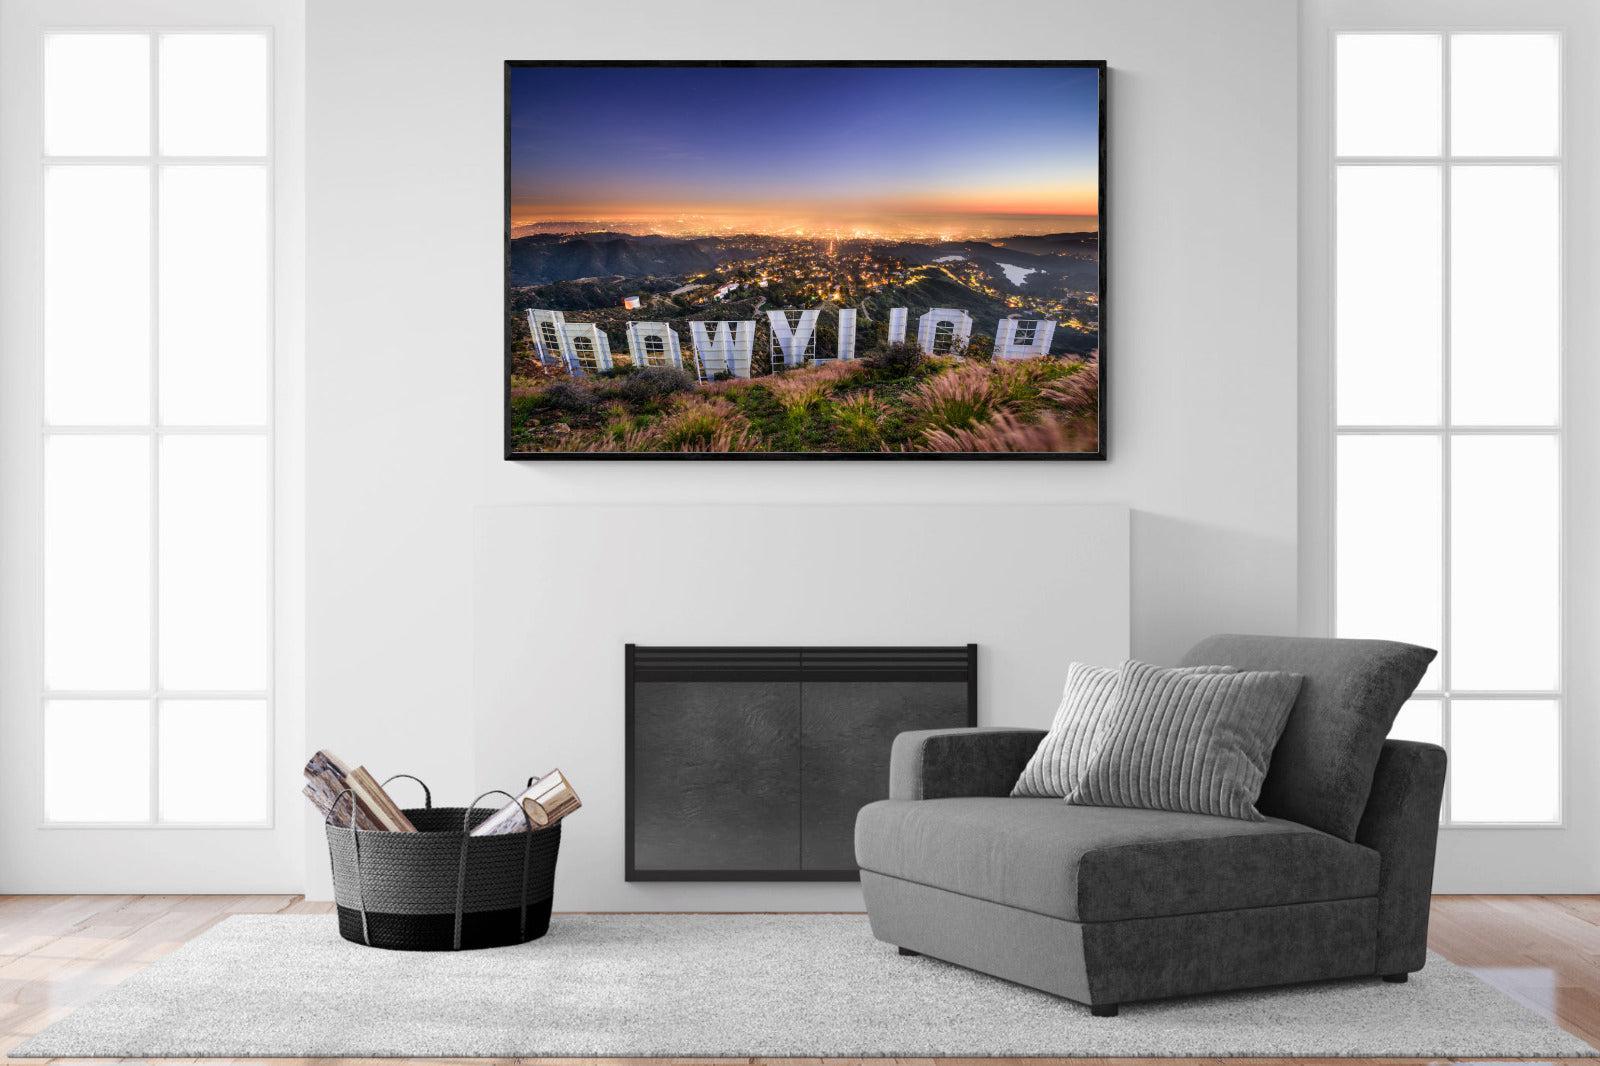 Hollywood-Wall_Art-150 x 100cm-Mounted Canvas-Black-Pixalot